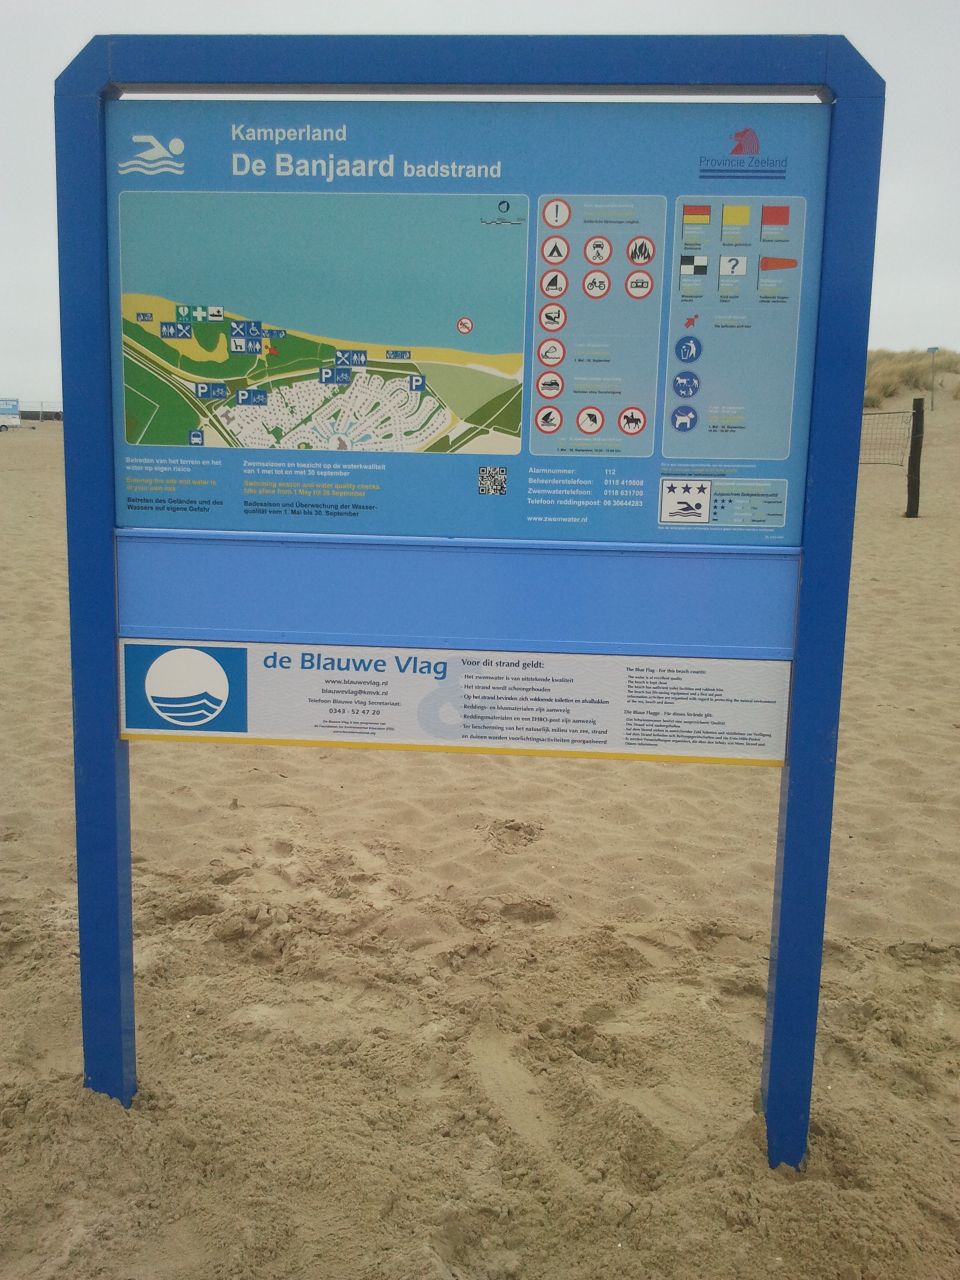 The information board at the swimming location Kamperland De Banjaard, overgang de Oude Banjaard